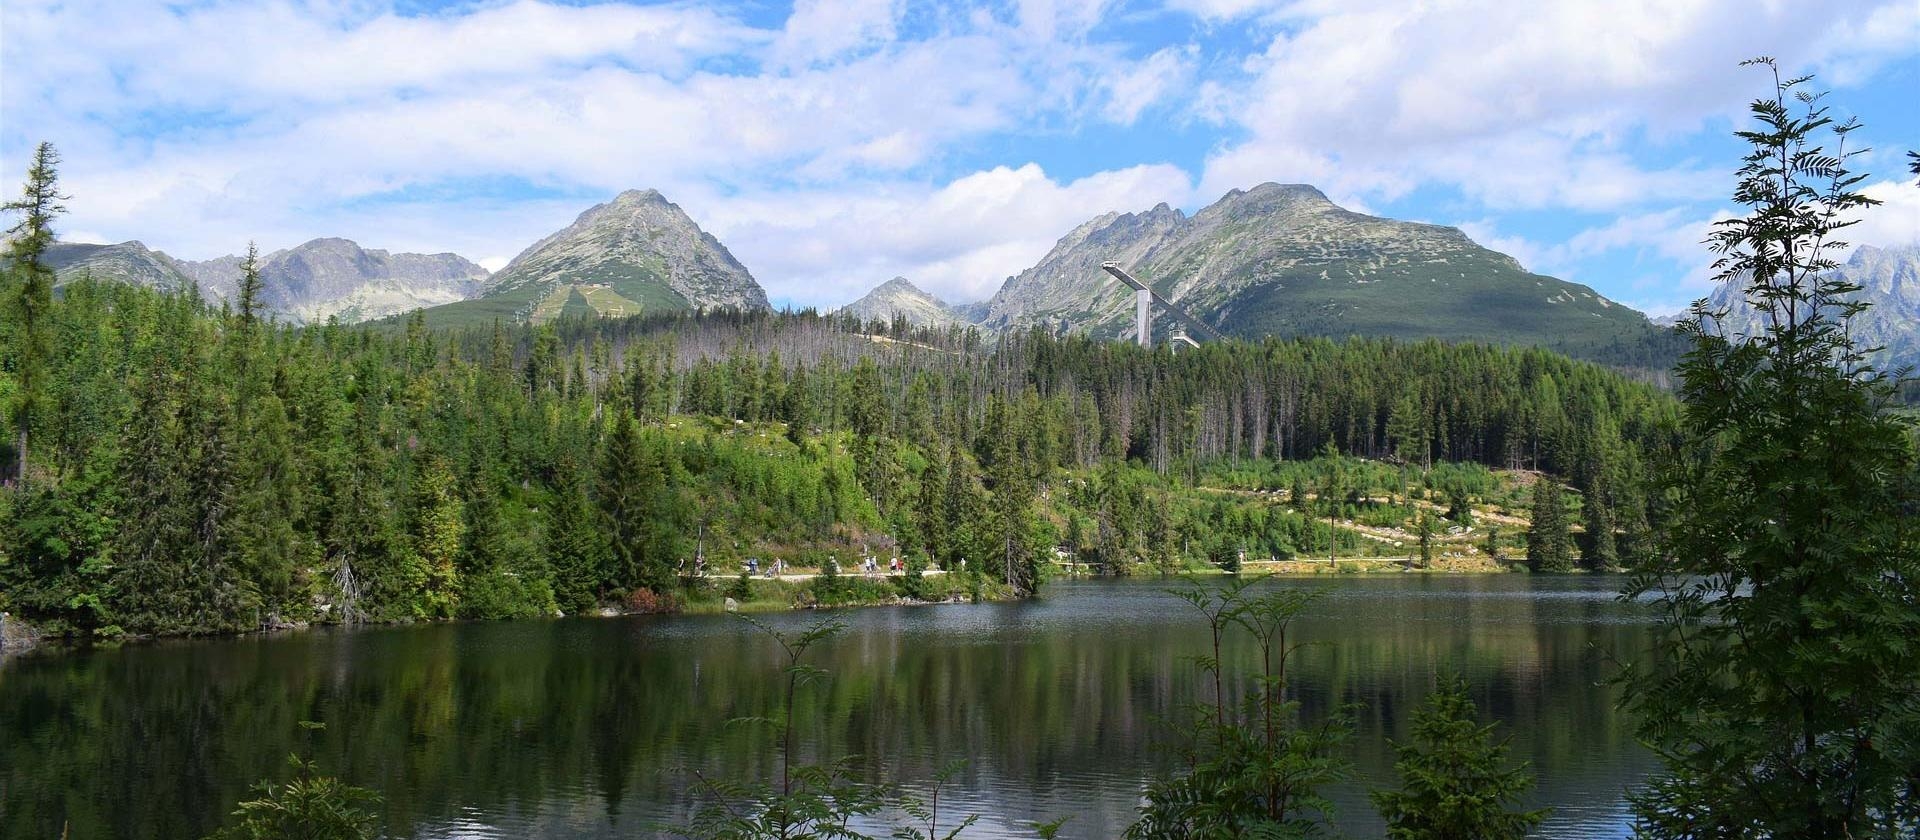 Štrbské mountain lake (Štrbské pleso) - Slovakia